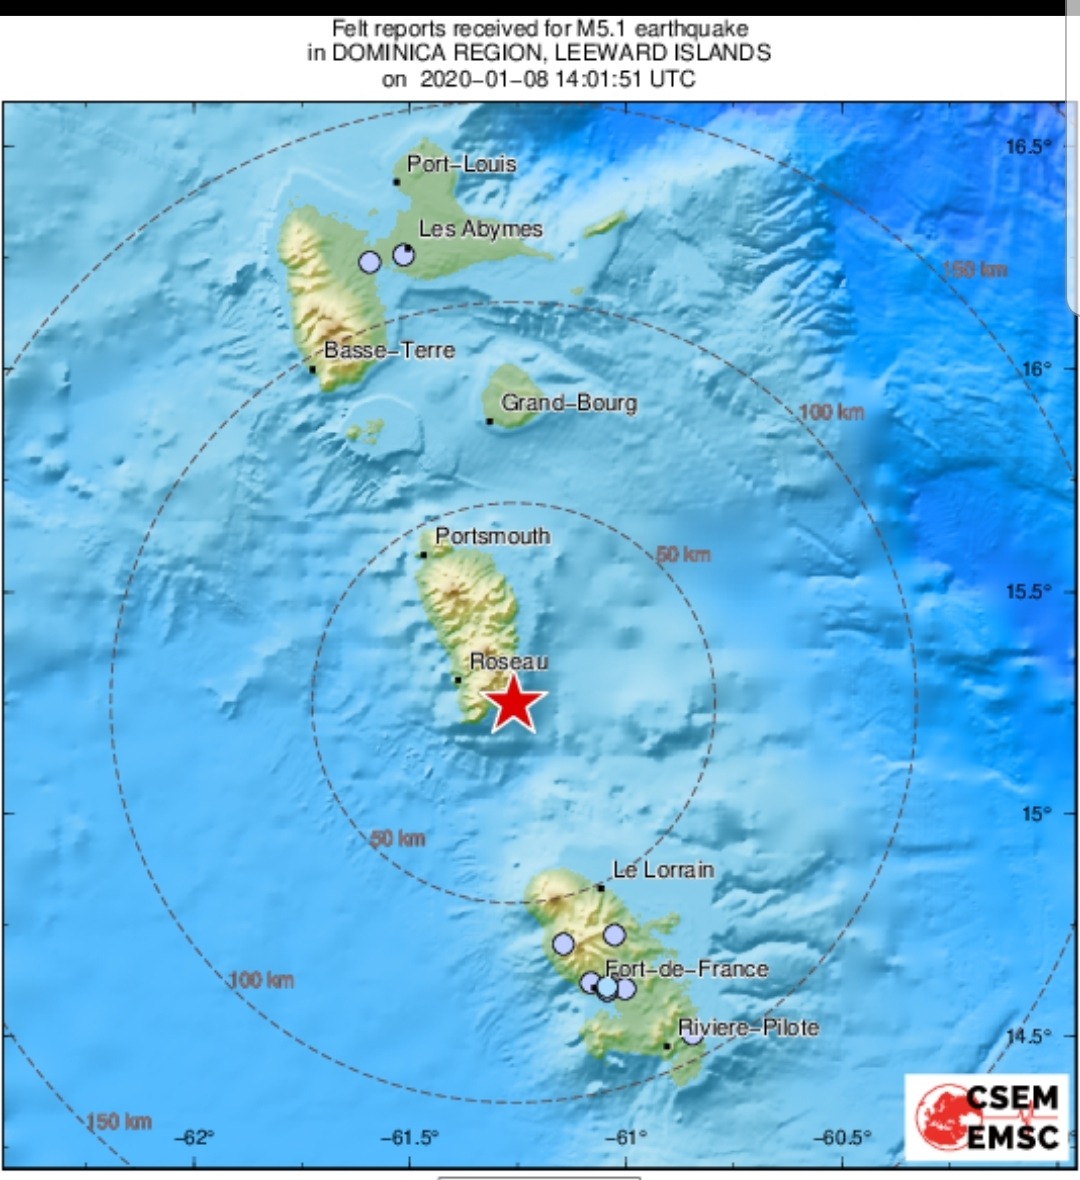     Un tremblement de terre enregistré en Martinique ce mercredi matin

